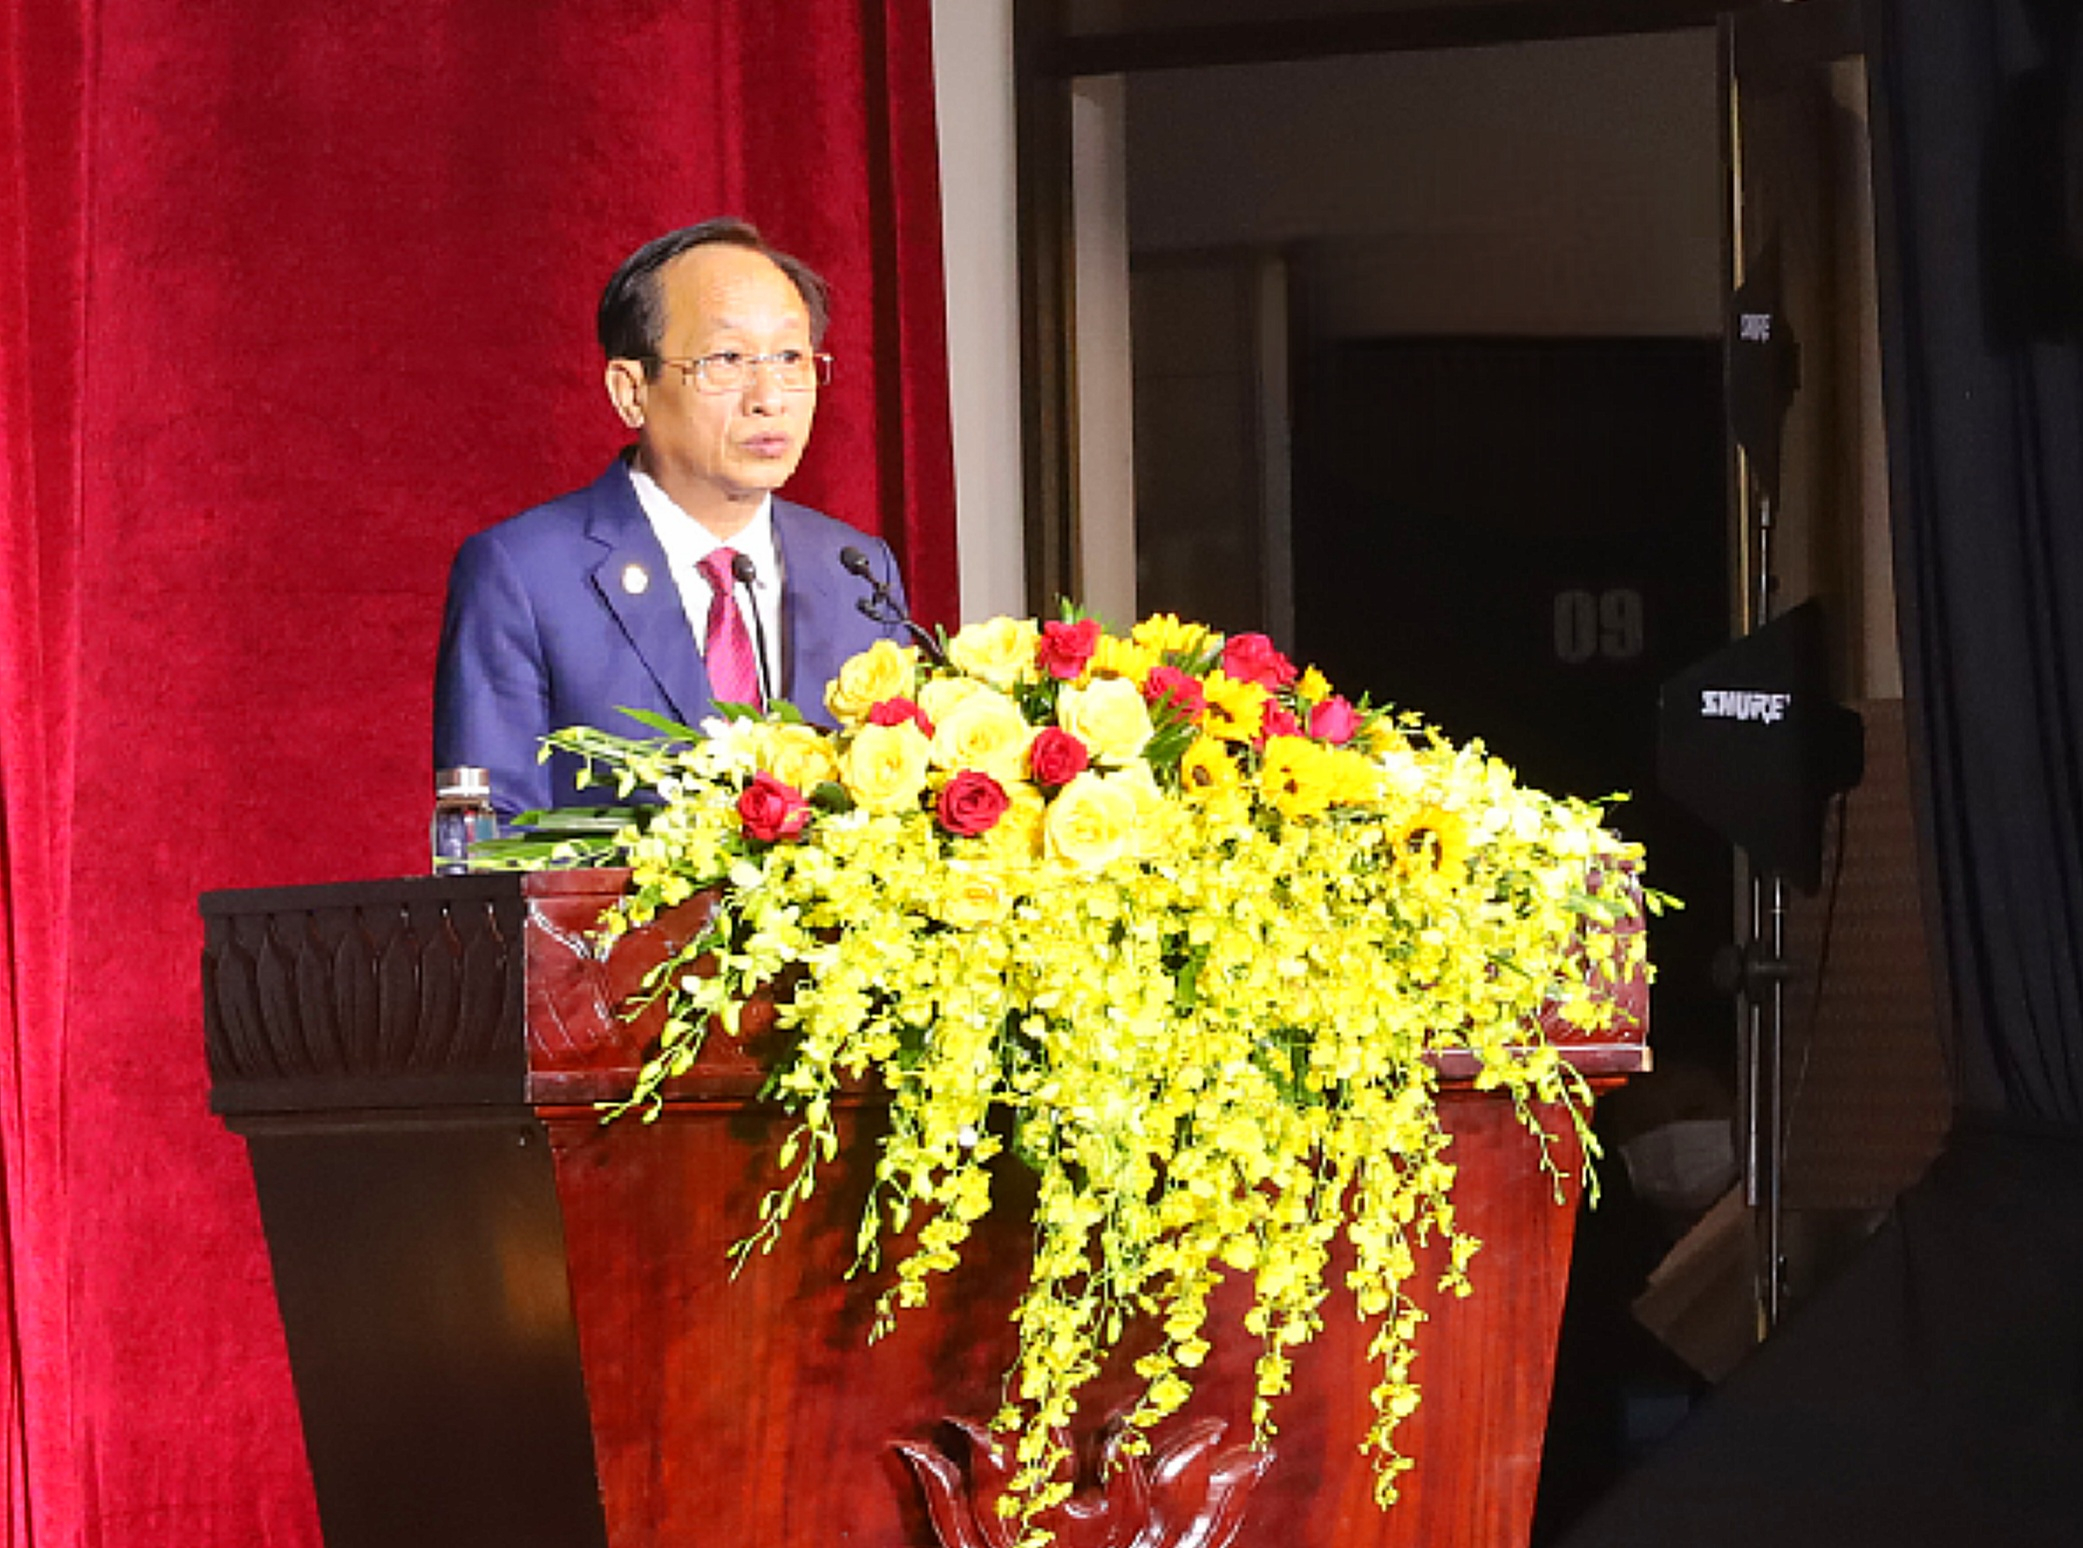 Ông Phạm Văn Thiều - Phó Bí thư Tỉnh ủy, Chủ tịch UBND tỉnh Bạc Liêu phát biểu khai mạc Hội nghị Xúc tiến Đầu tư tỉnh Bạc Liêu.